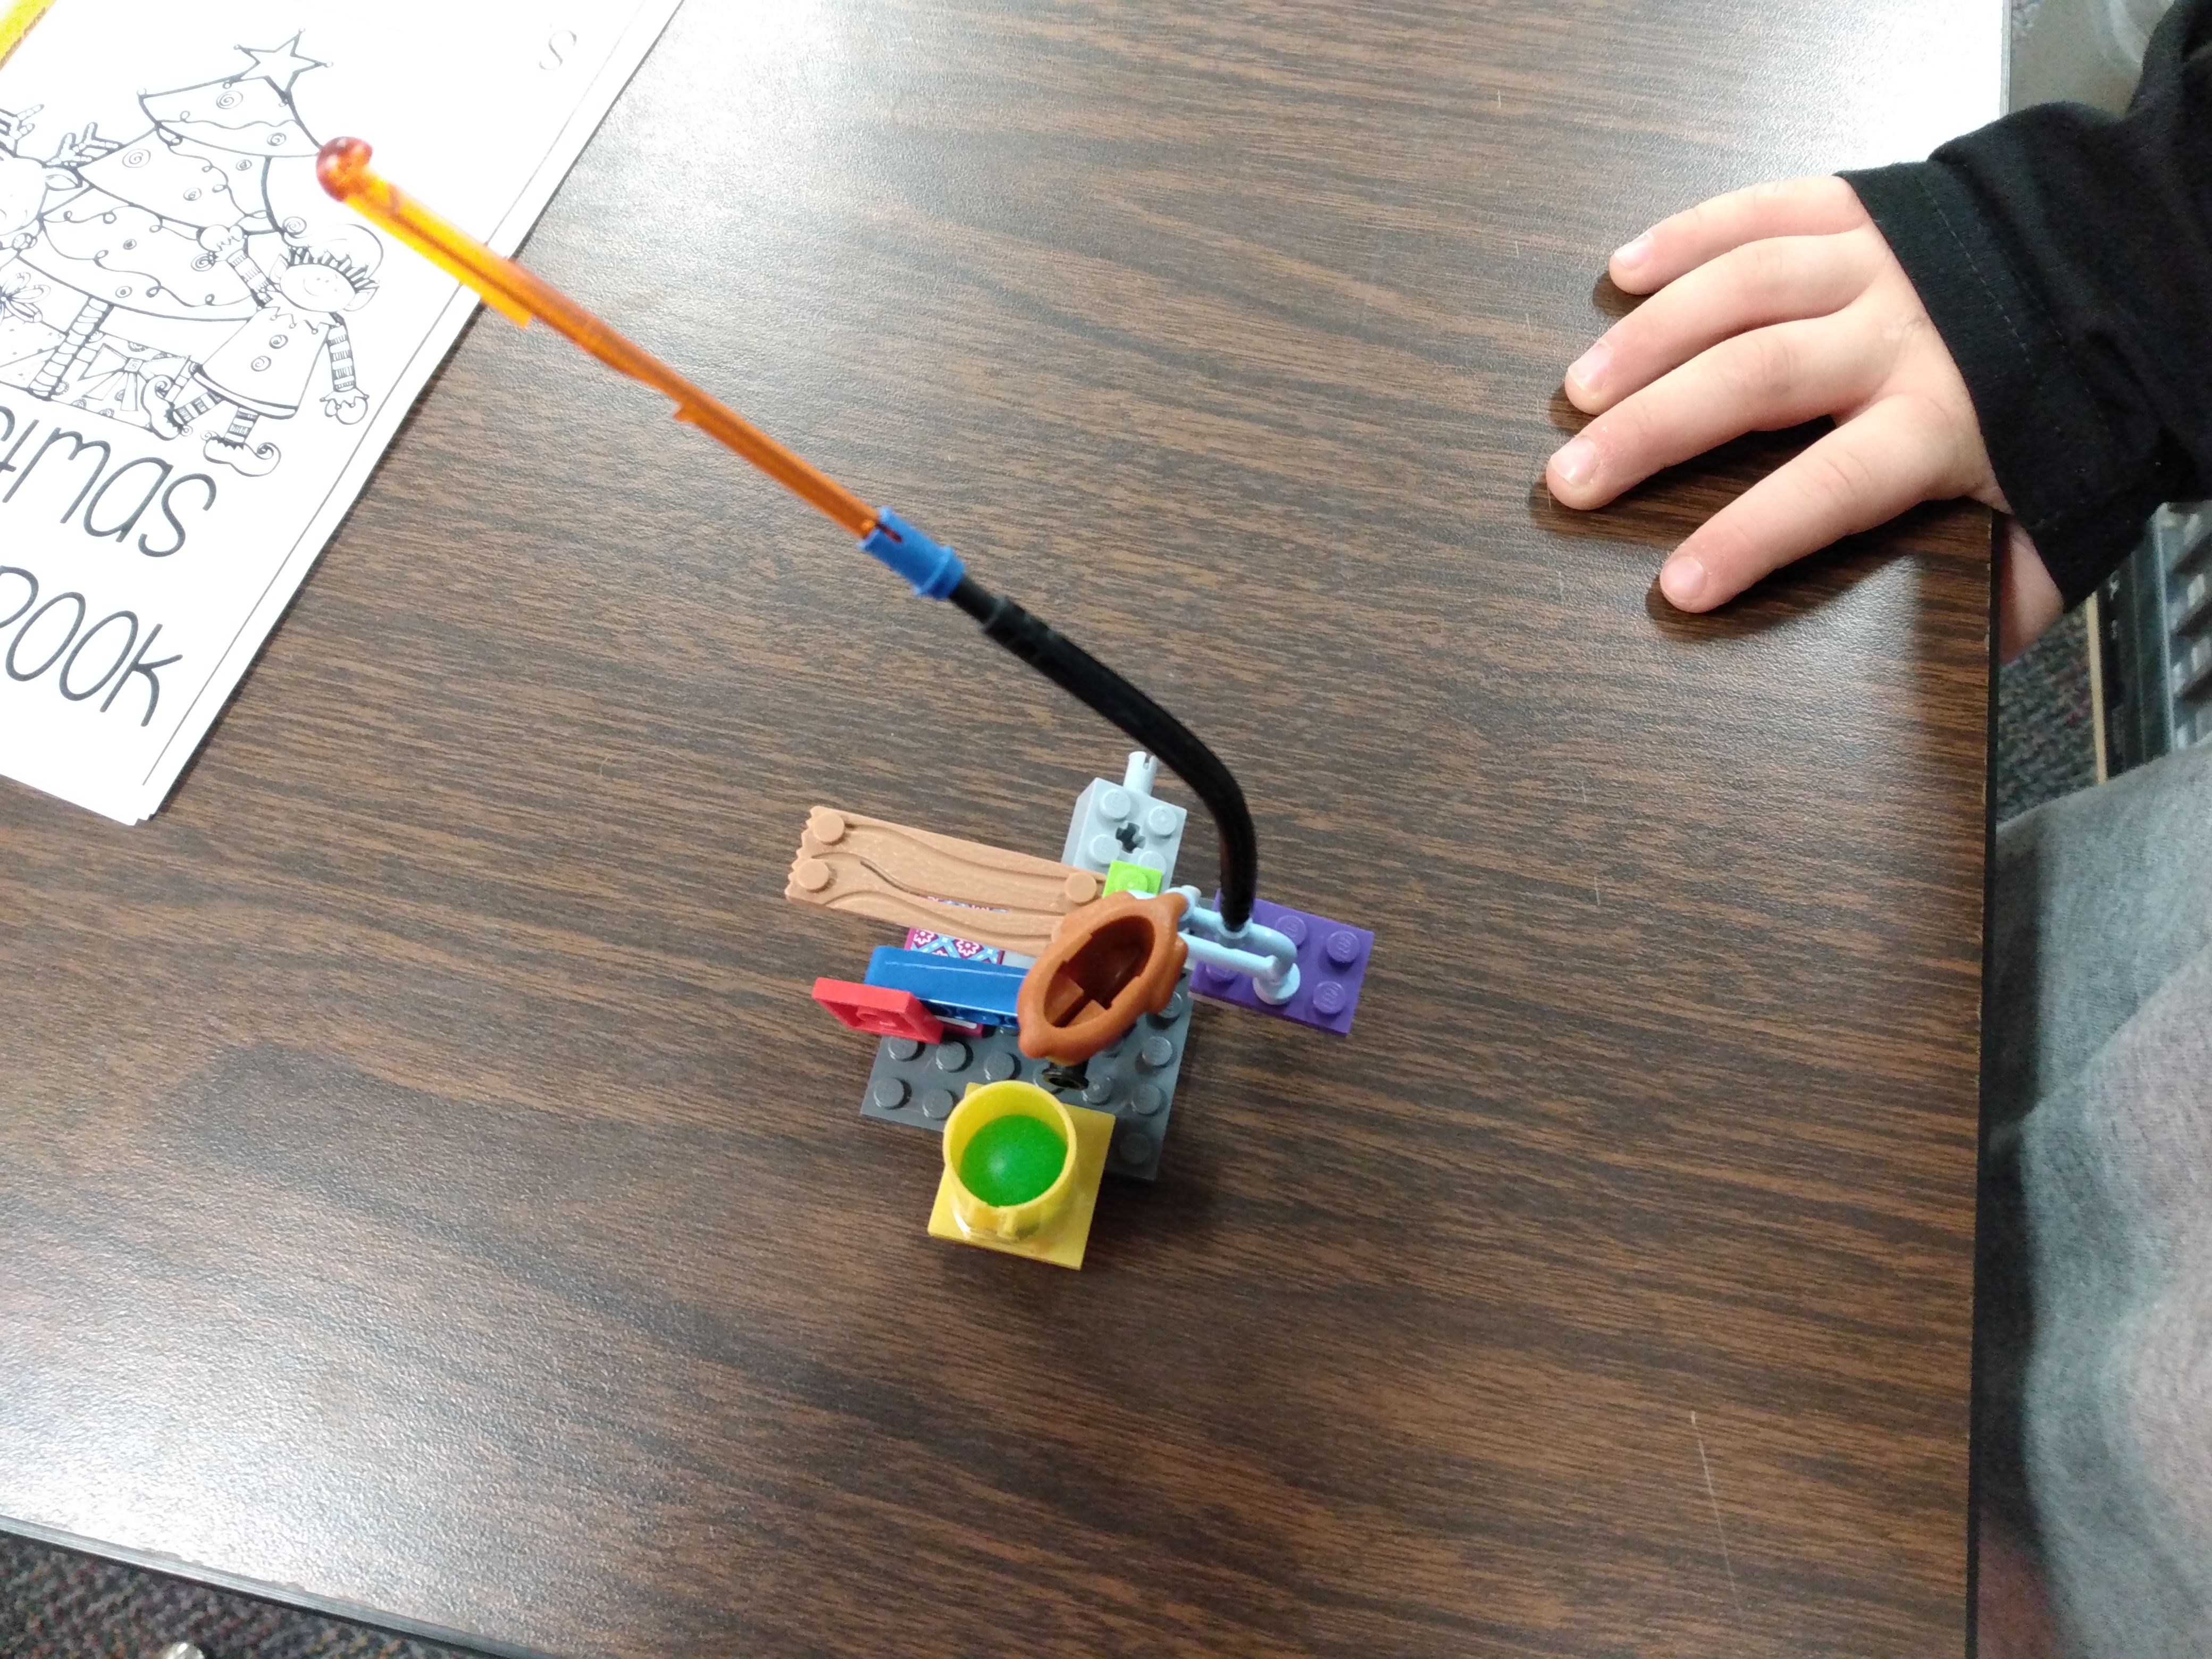 Student made Rube Goldberg machine. 